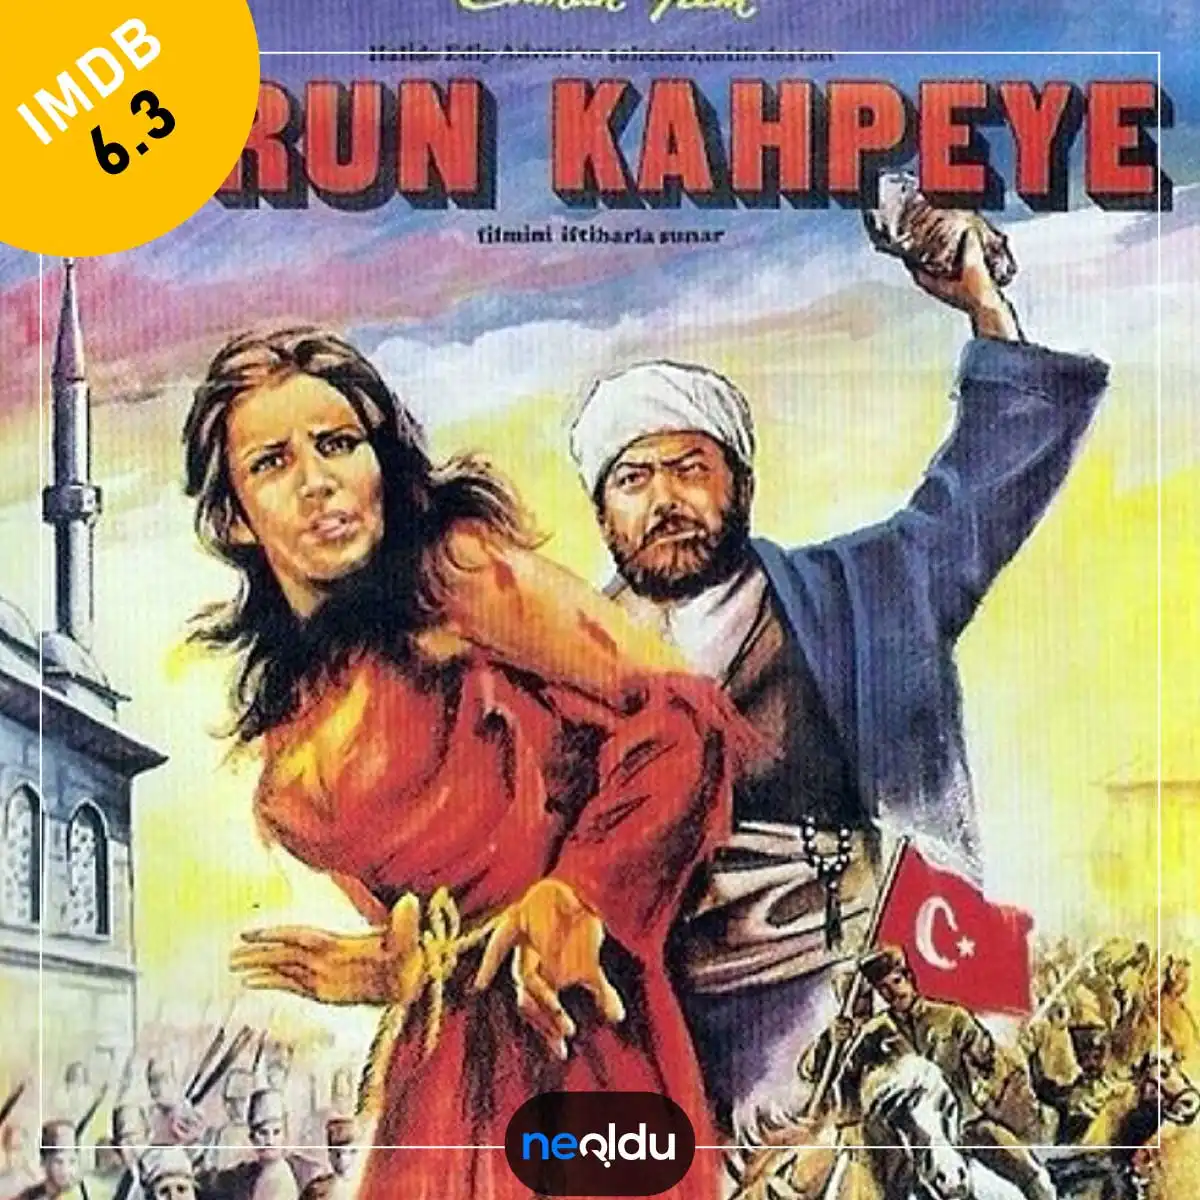 Türk Tarih Filmleri